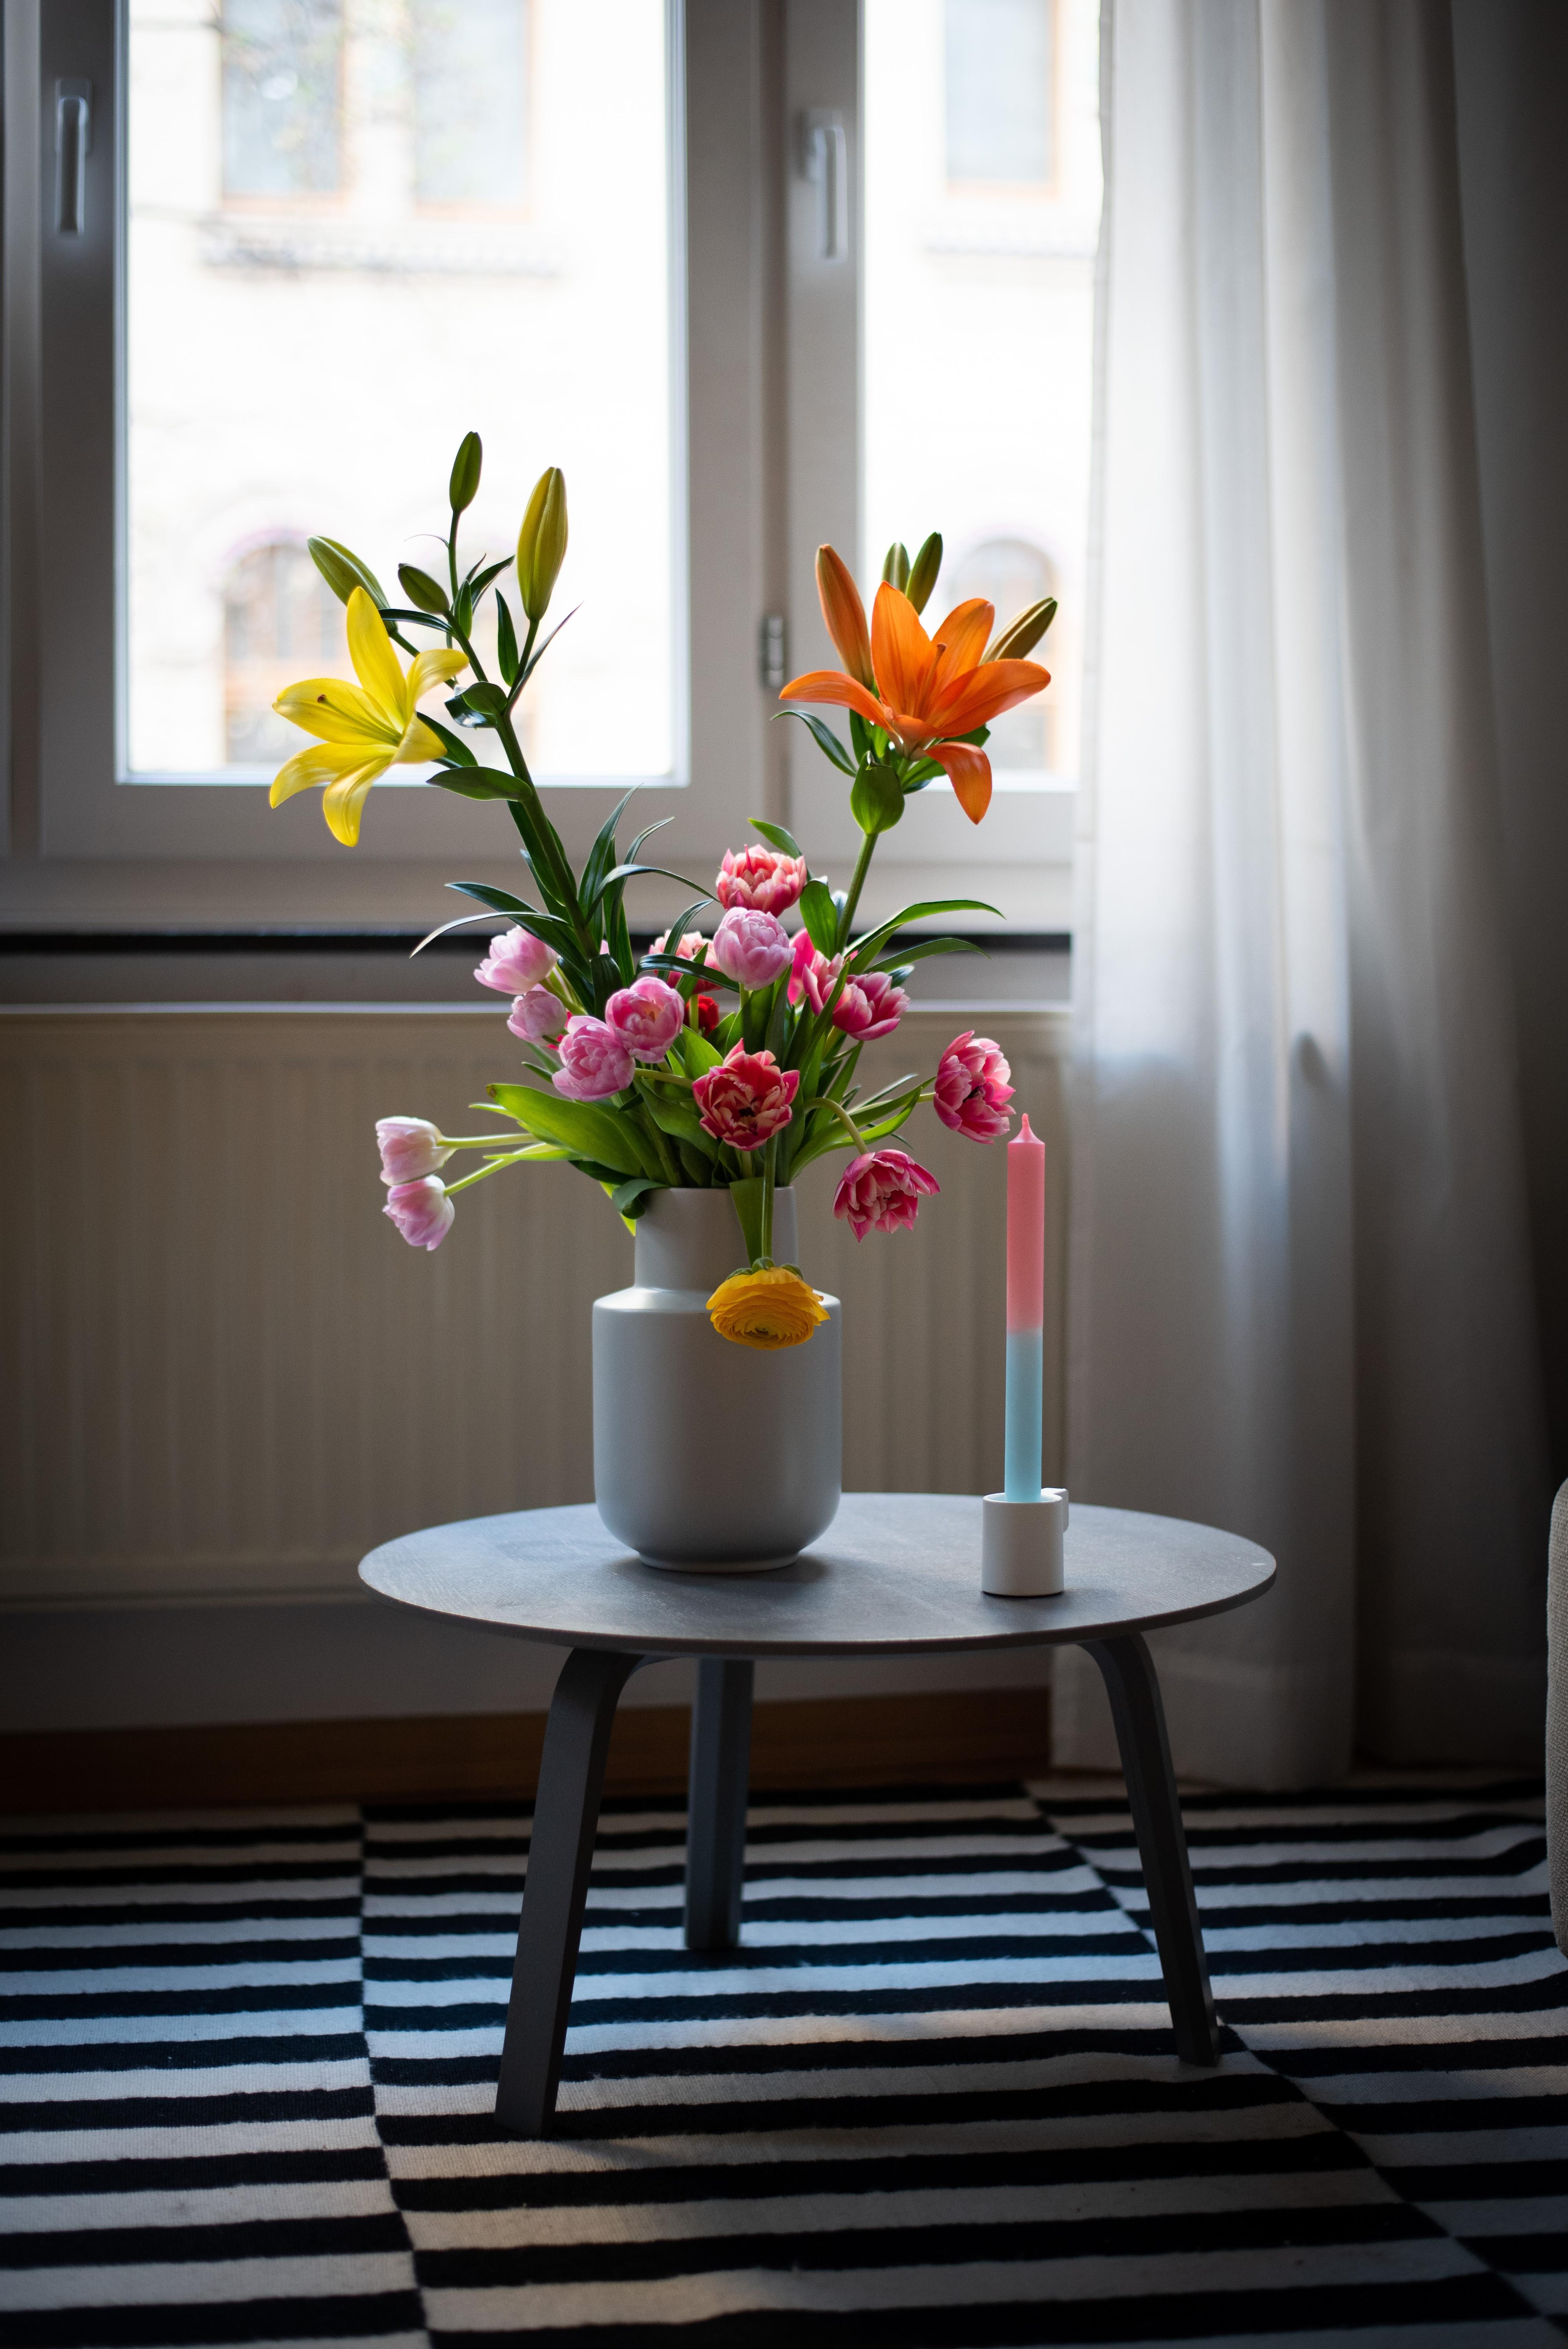 Bitte Frühling, komm ganz schnell #flowers #kerze #blumen #deko #wohnzimmer #beistelltisch #vase #interiorinspo